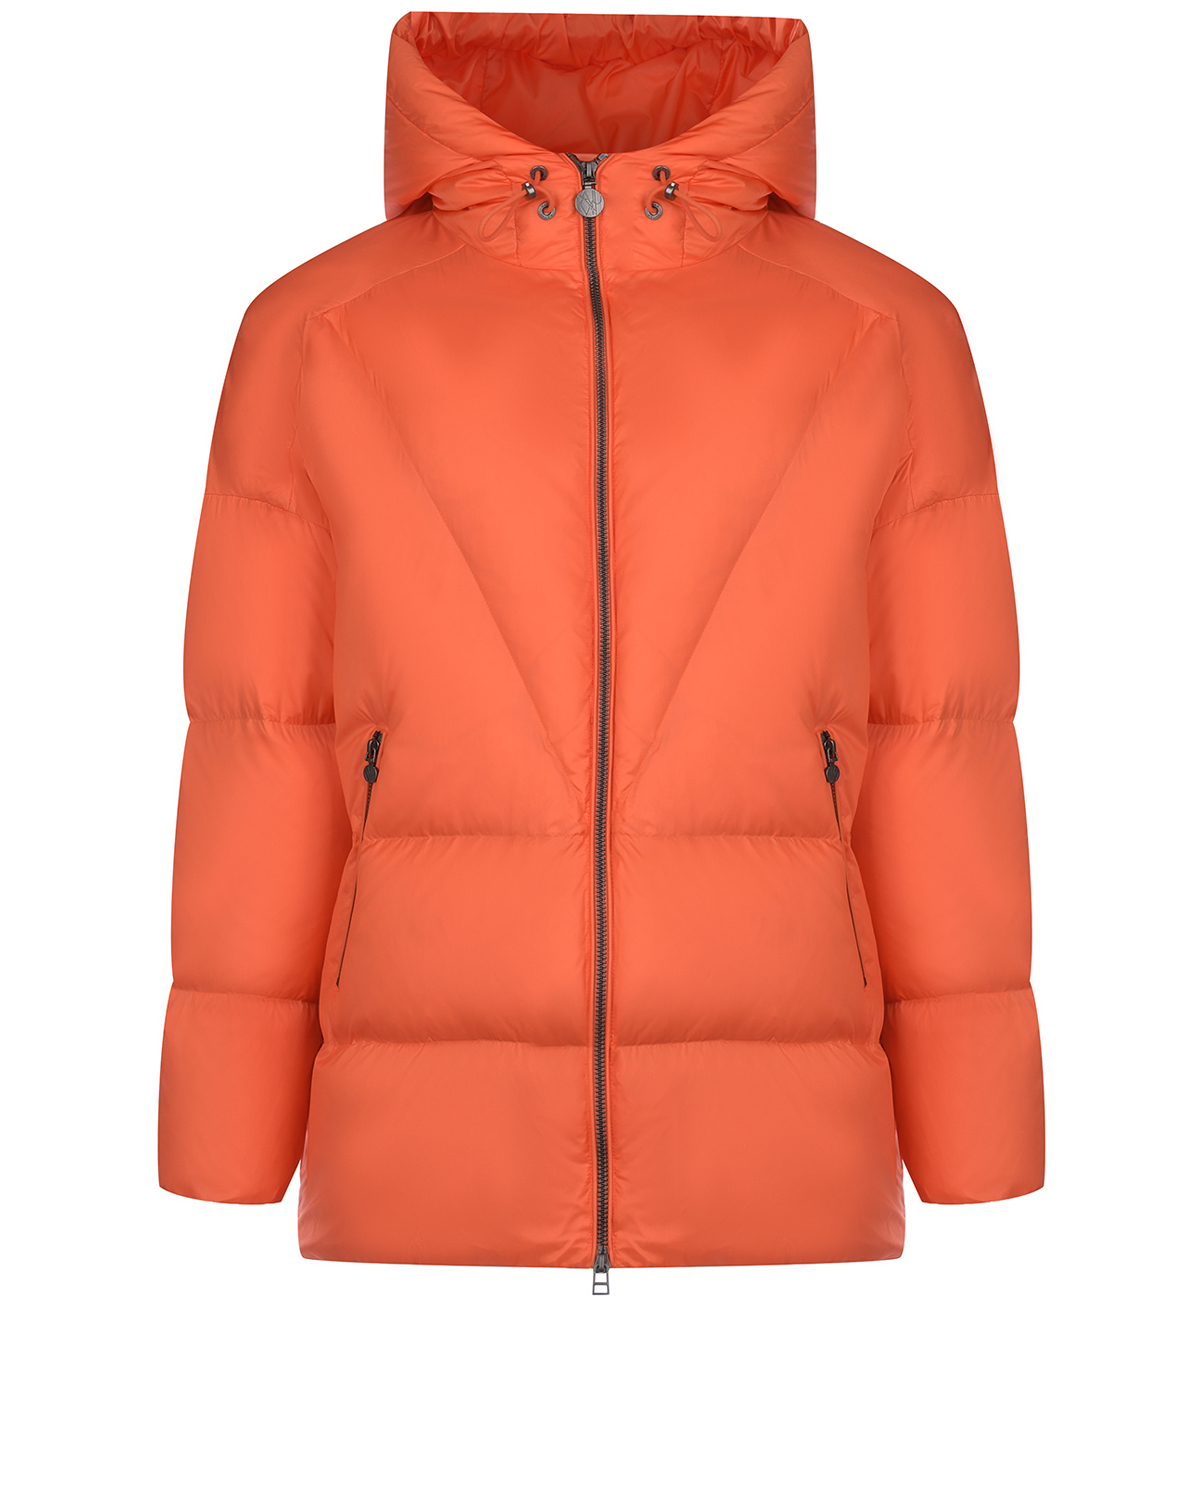 Удлиненная оранжевая куртка с капюшоном Naumi, размер 38, цвет оранжевый - фото 11